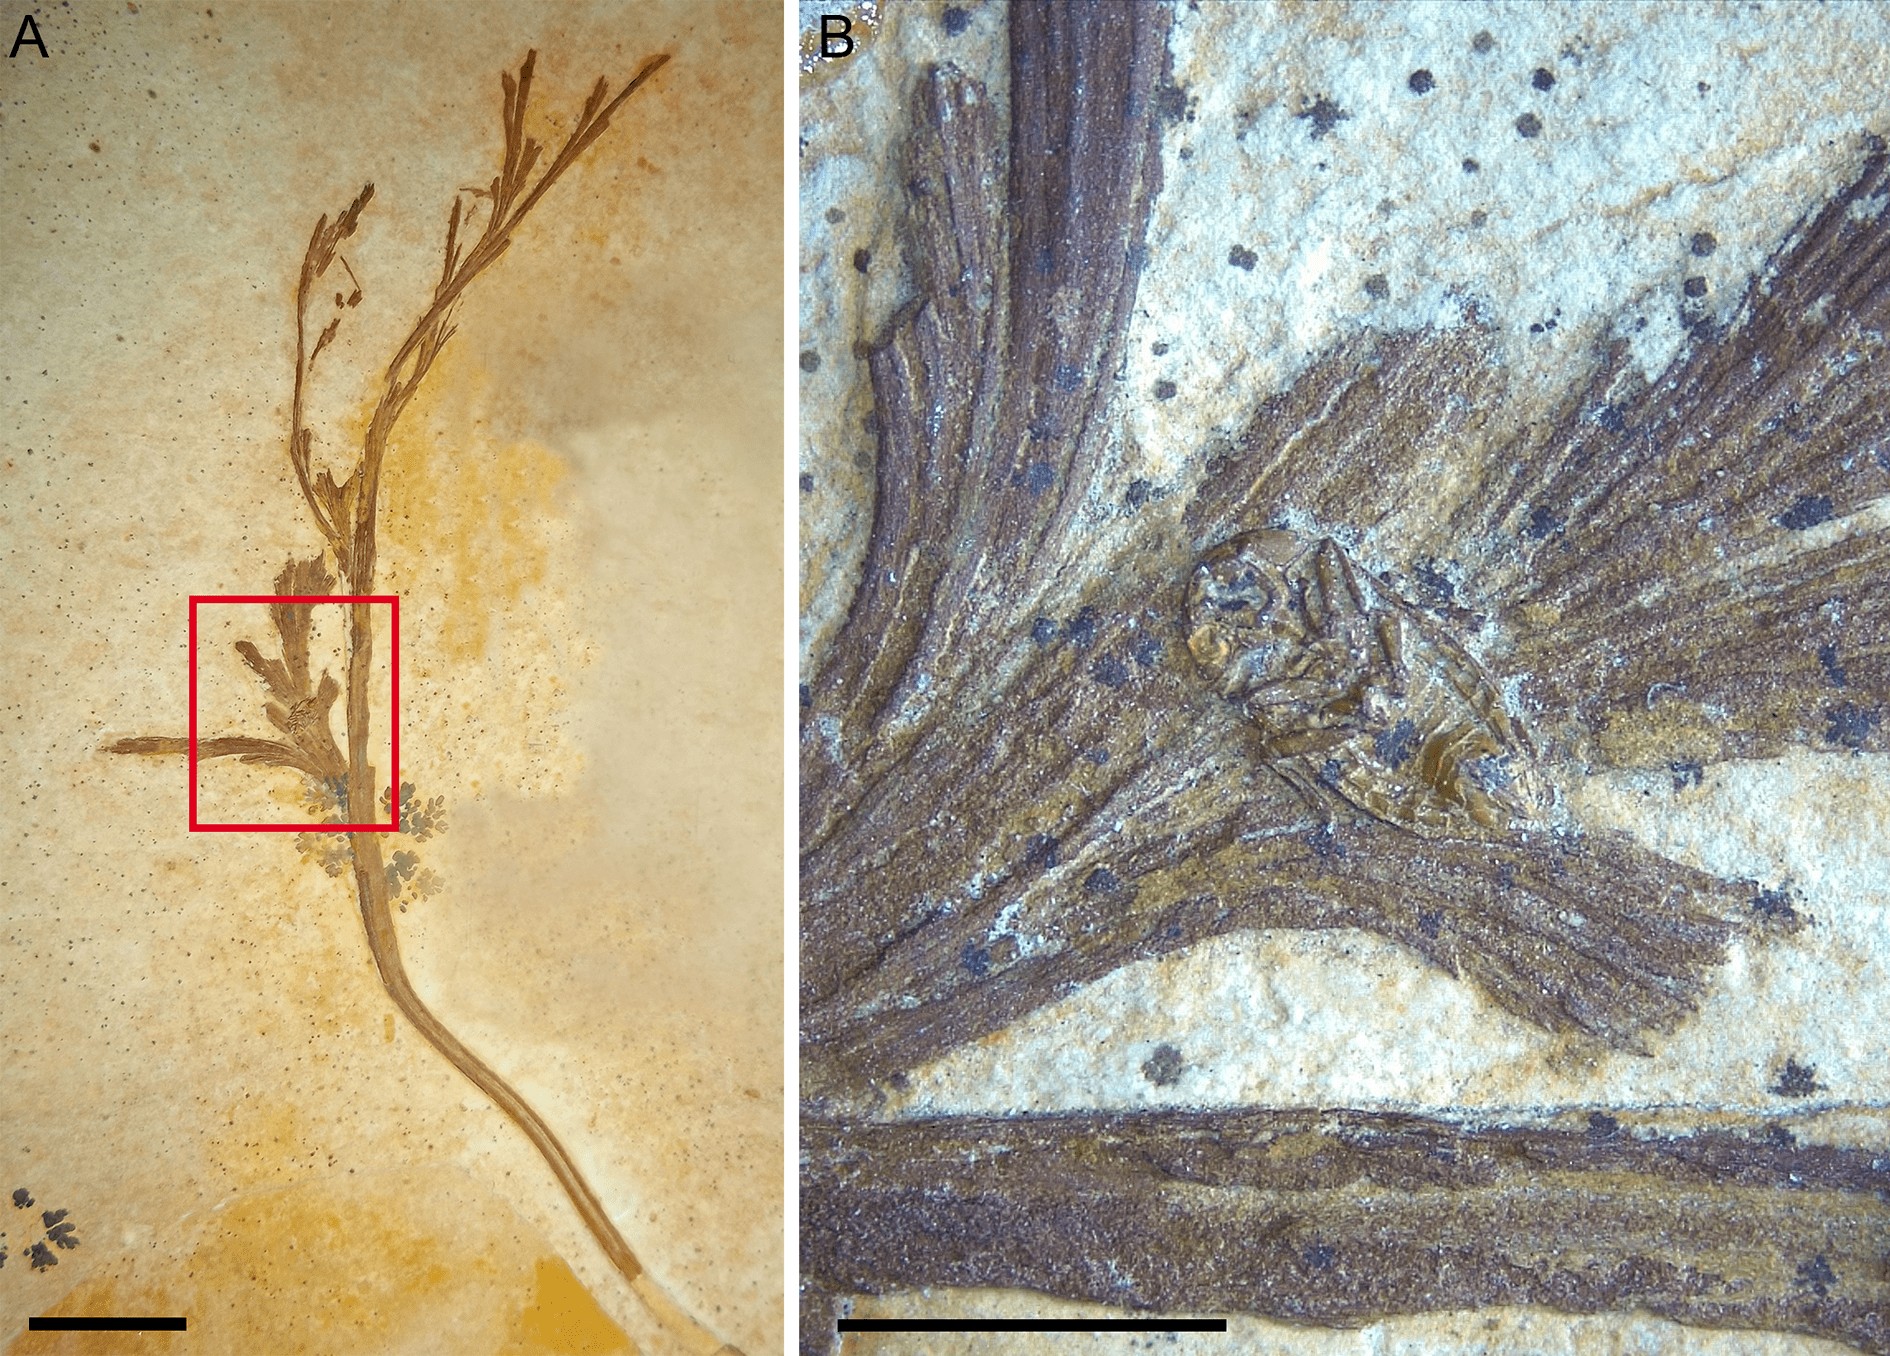 Fóssil associado a folha de samambaia revela nova espécie de percevejo na Bacia do Araripe (Foto: Estudo)